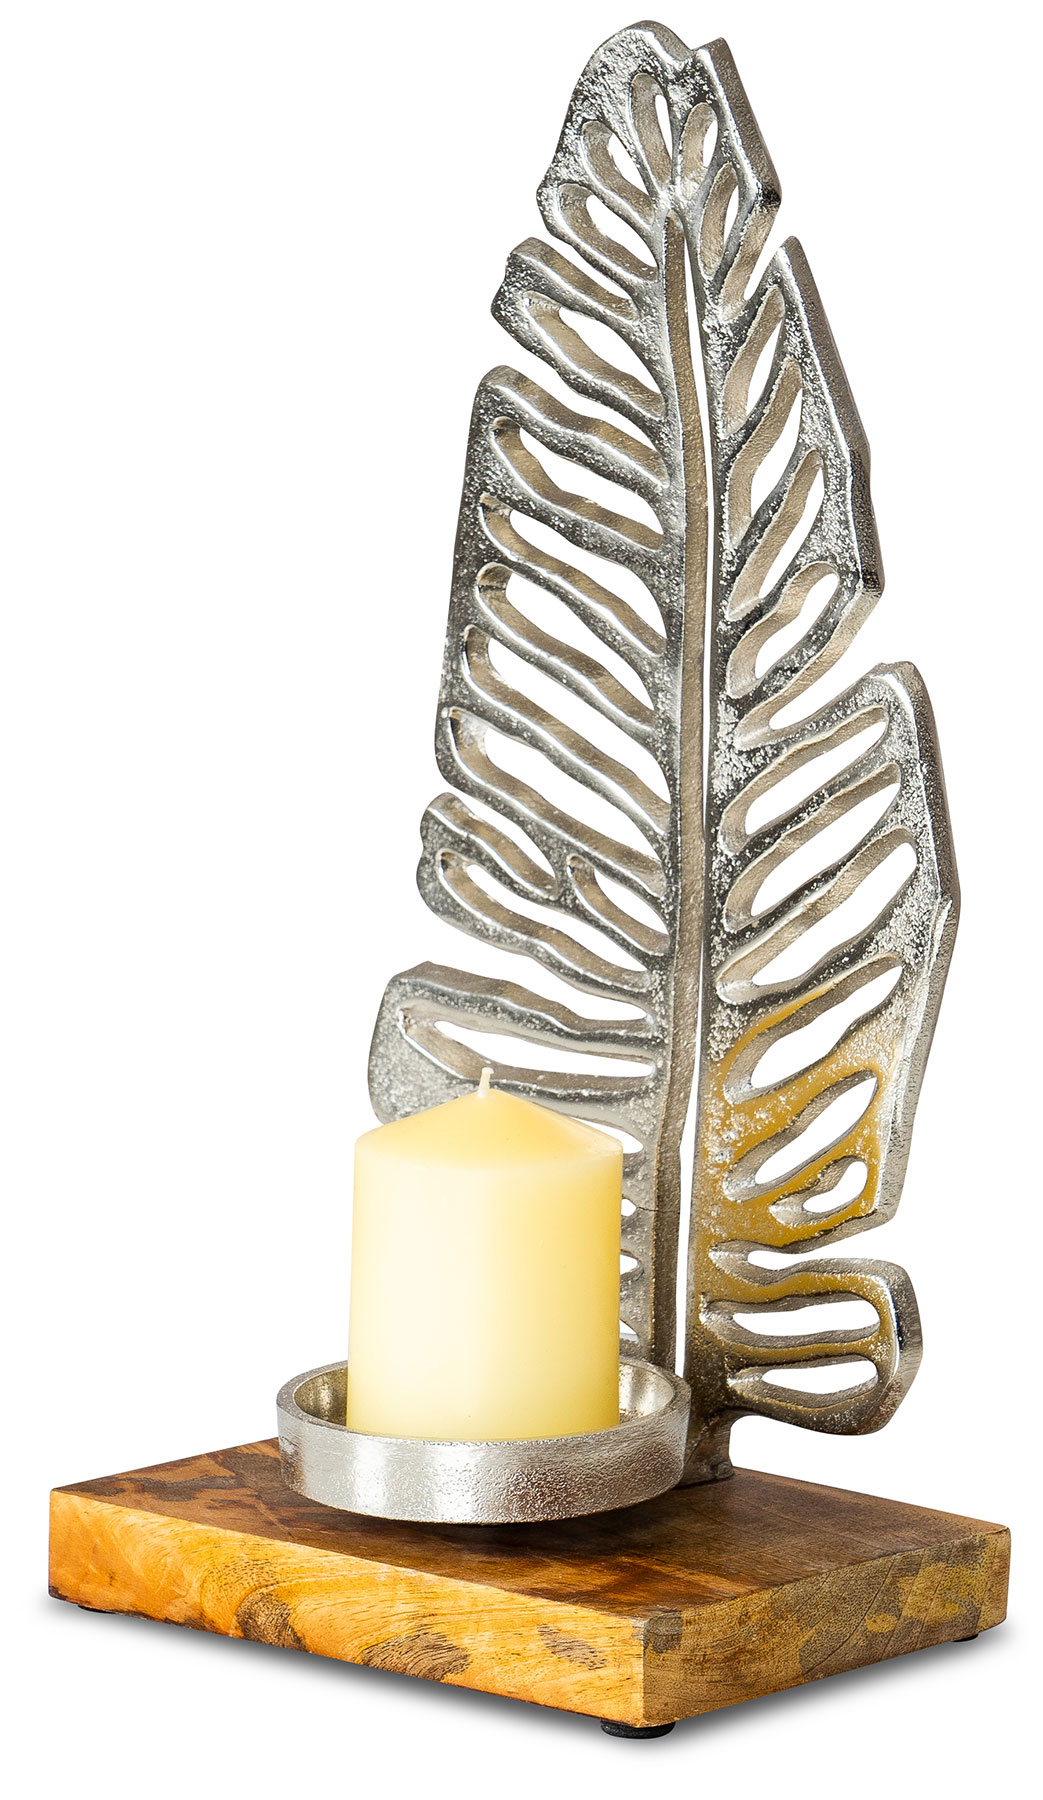 Kerzenständer 35cm Kerzenhalter Mango Holz Blatt Silber Tischdeko Kerzenleuchter